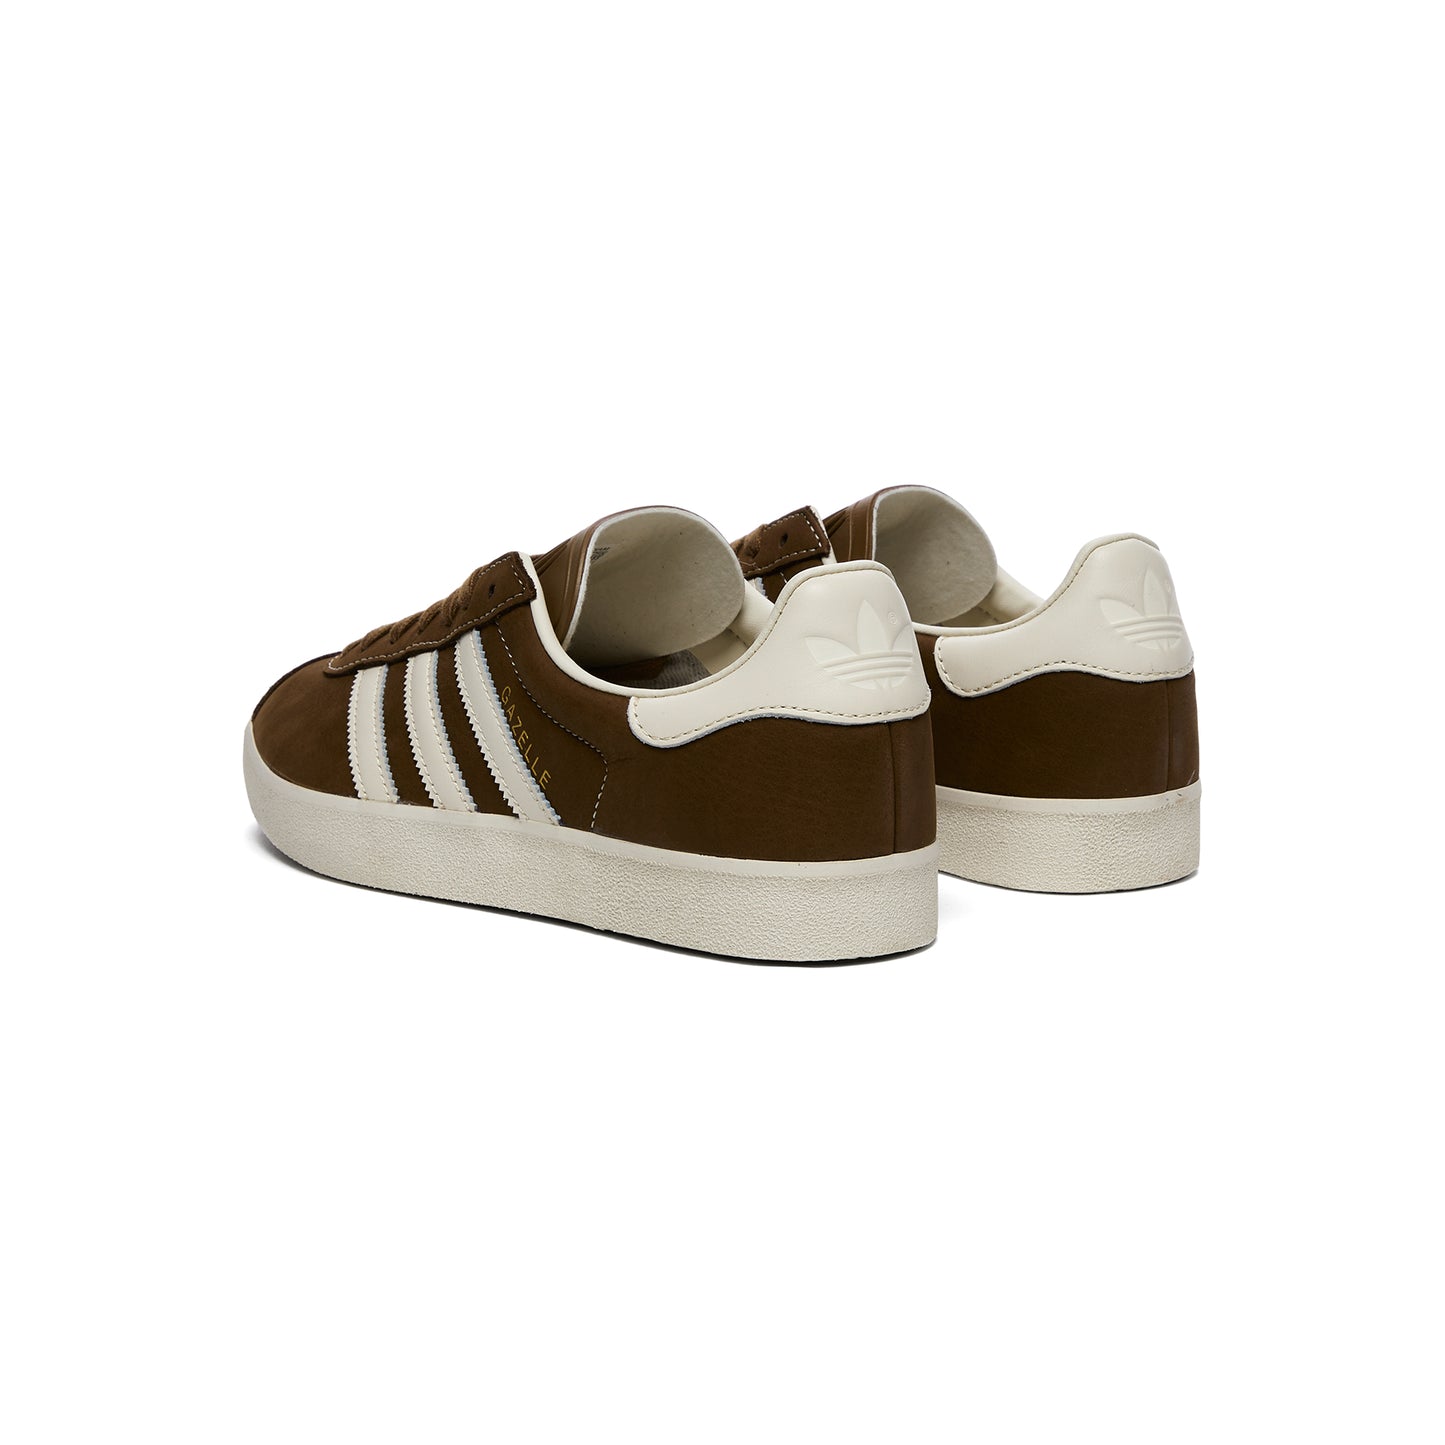 Adidas Gazelle 85 (Brown/White)